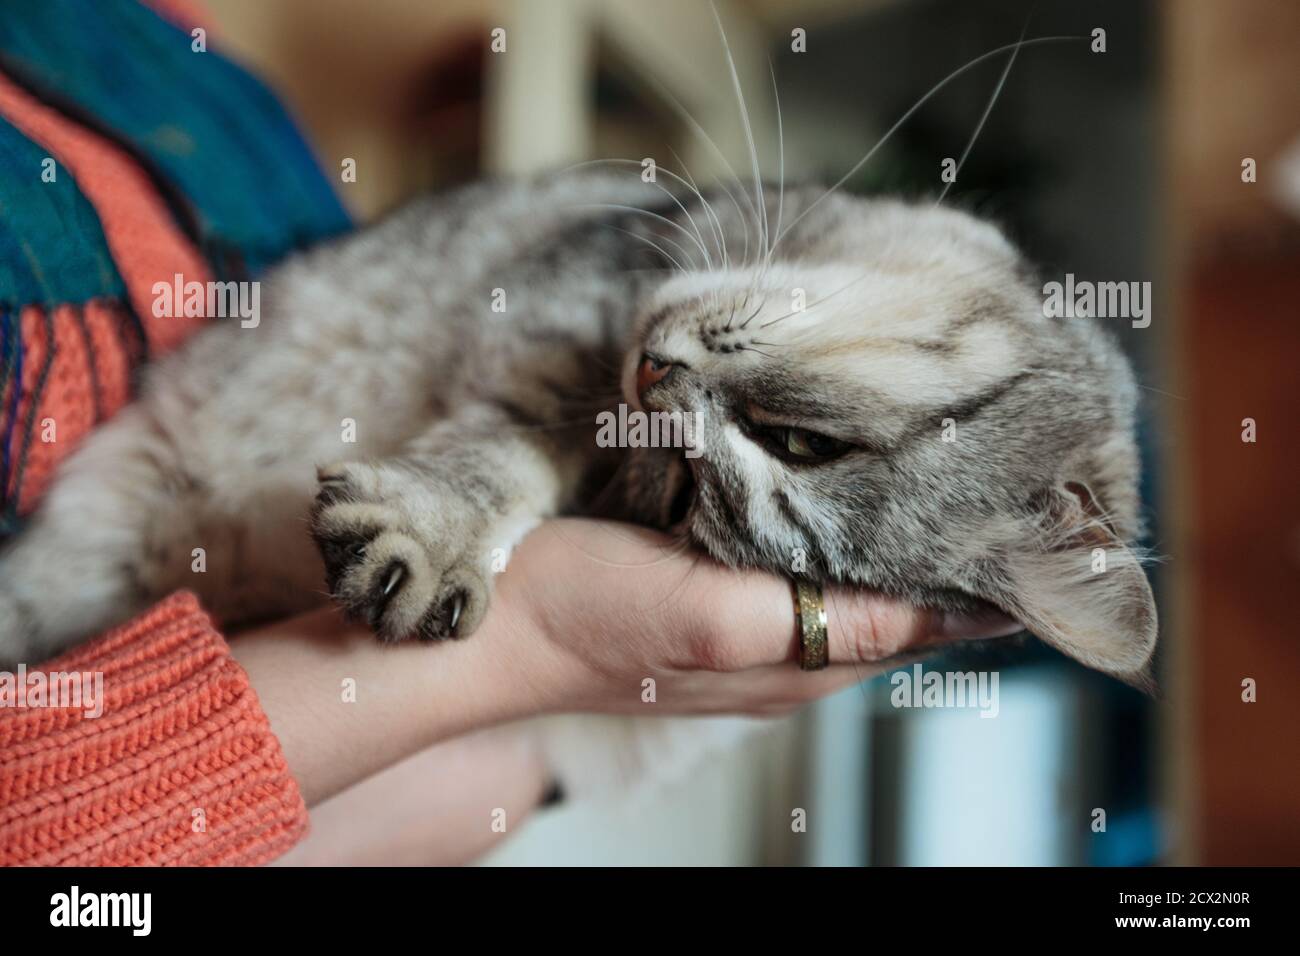 Fürsorgliche Hände nehmen eine niedliche graue Erwachsene Katze. Schöne kontroverte Katze entspannen und liegen in den Händen Stockfoto